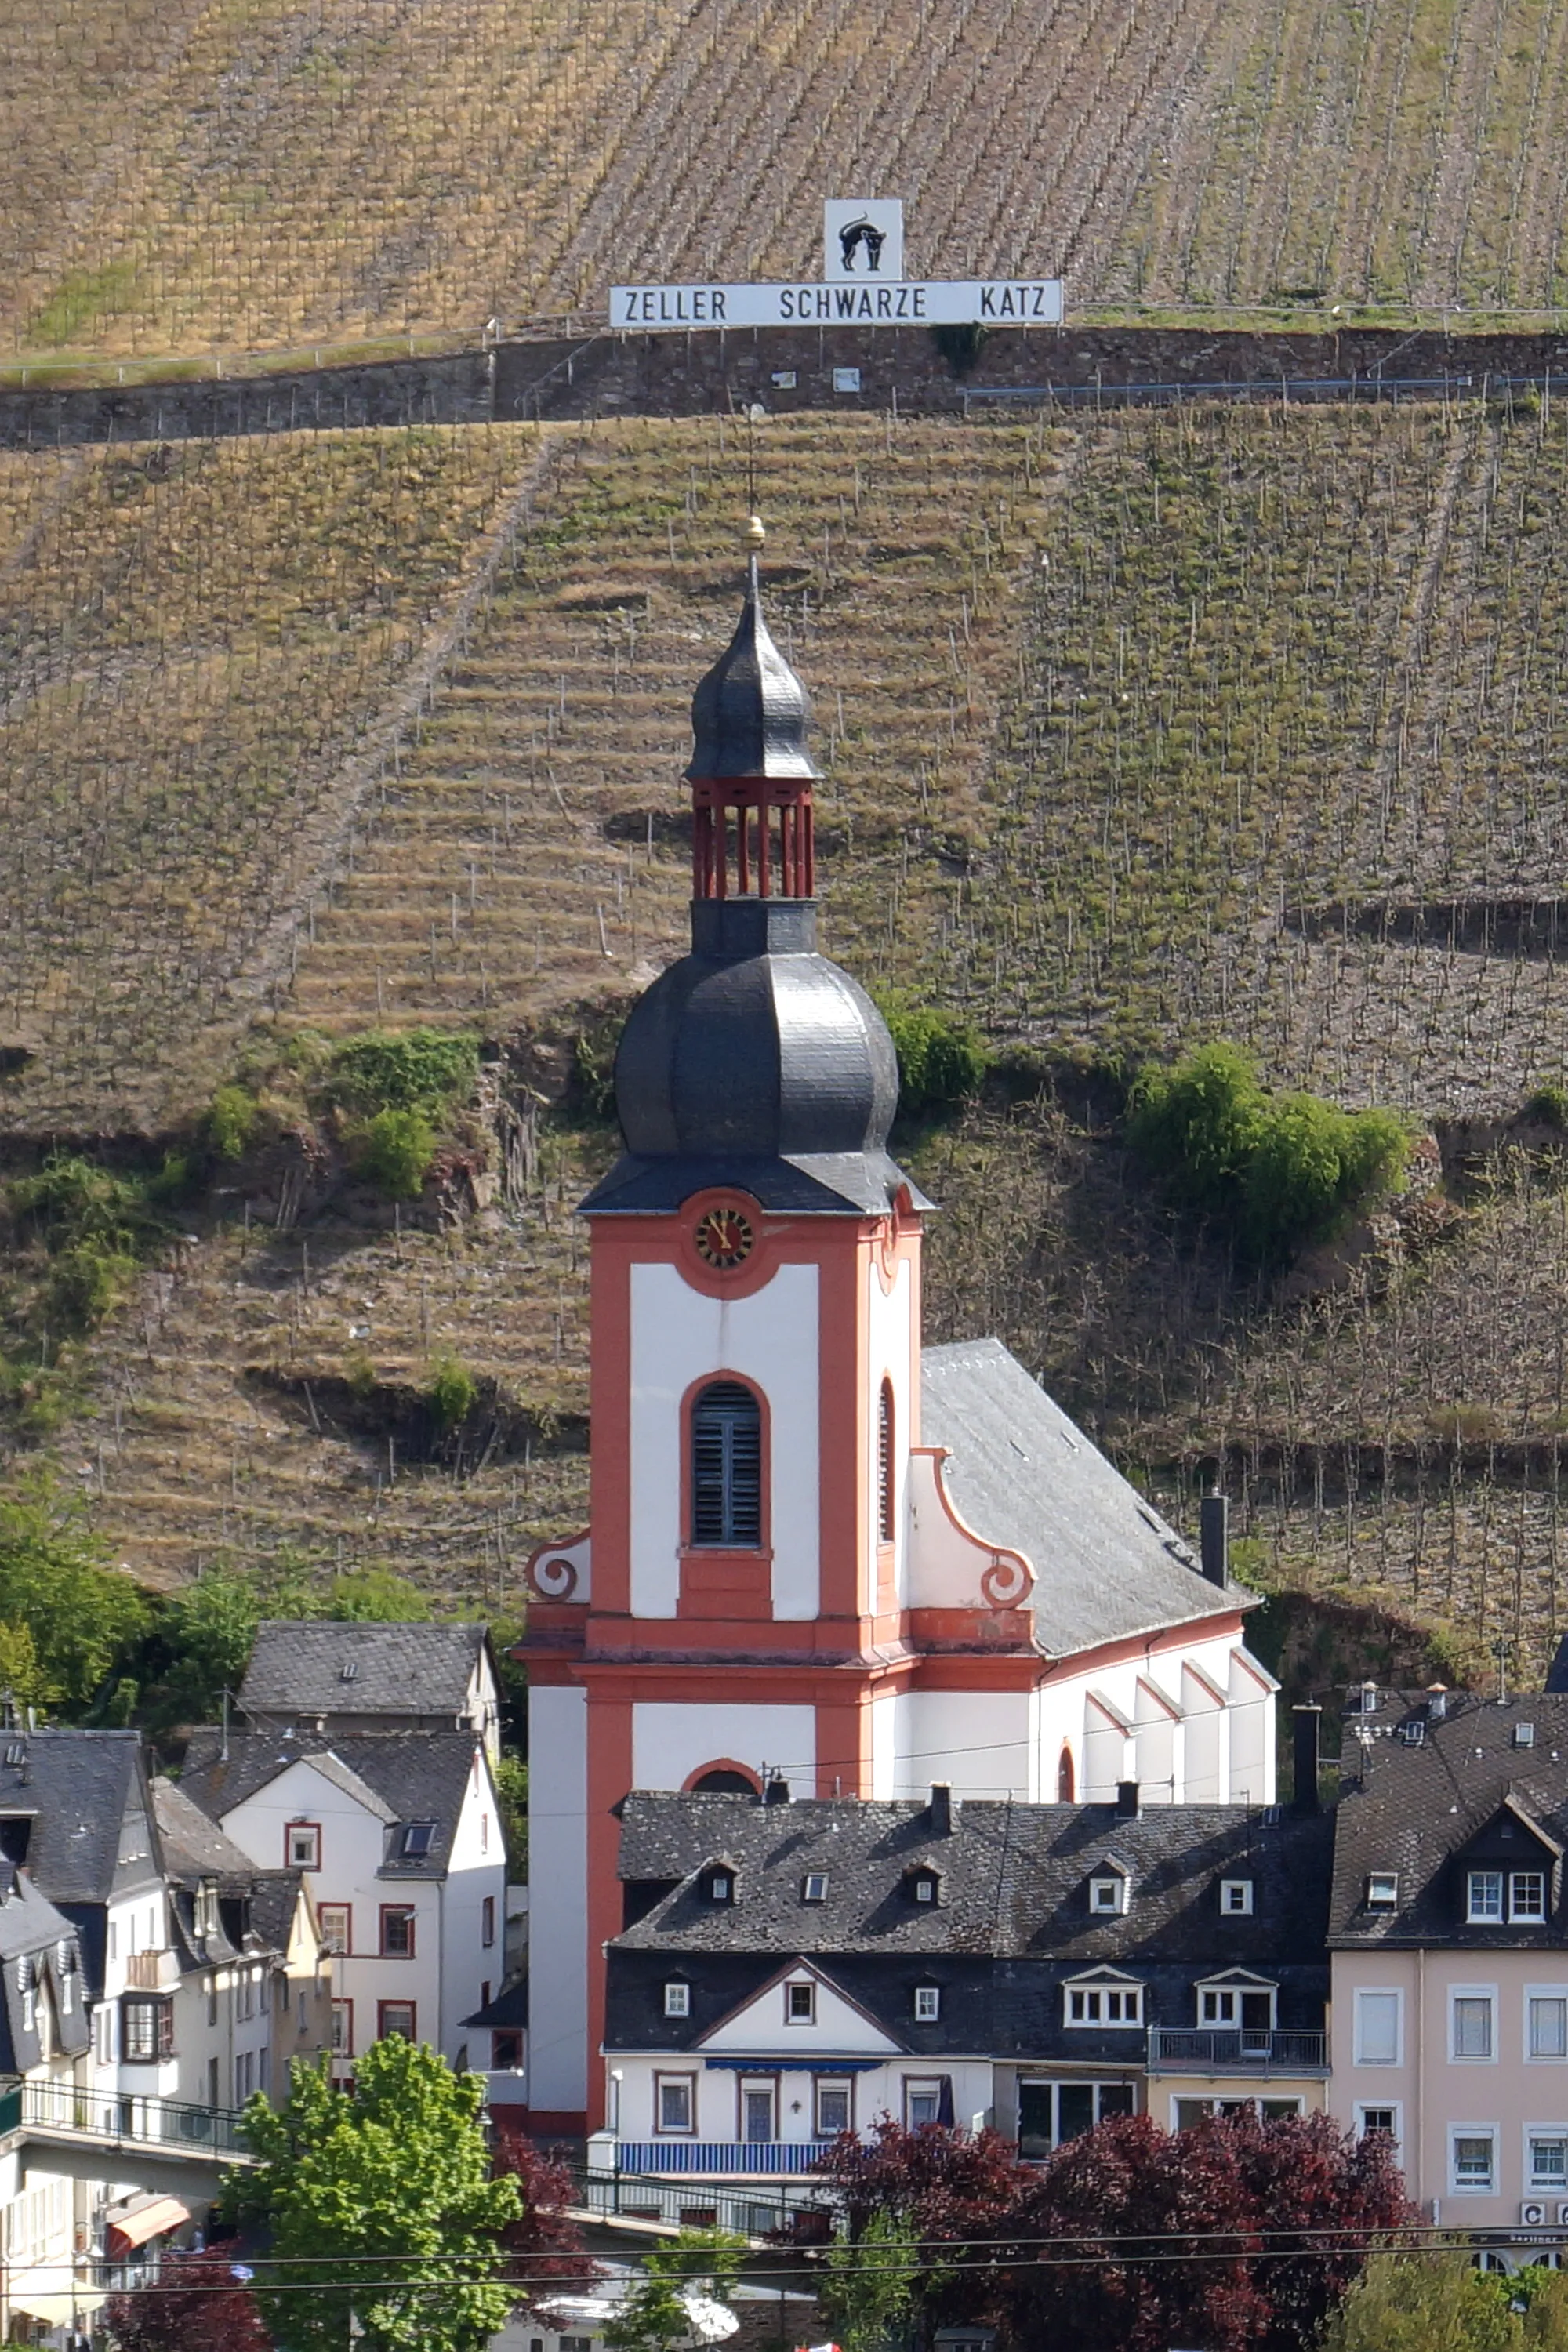 Photo showing: Großlage Schwarze Katz mit der St. Peter-Kirche in Zell